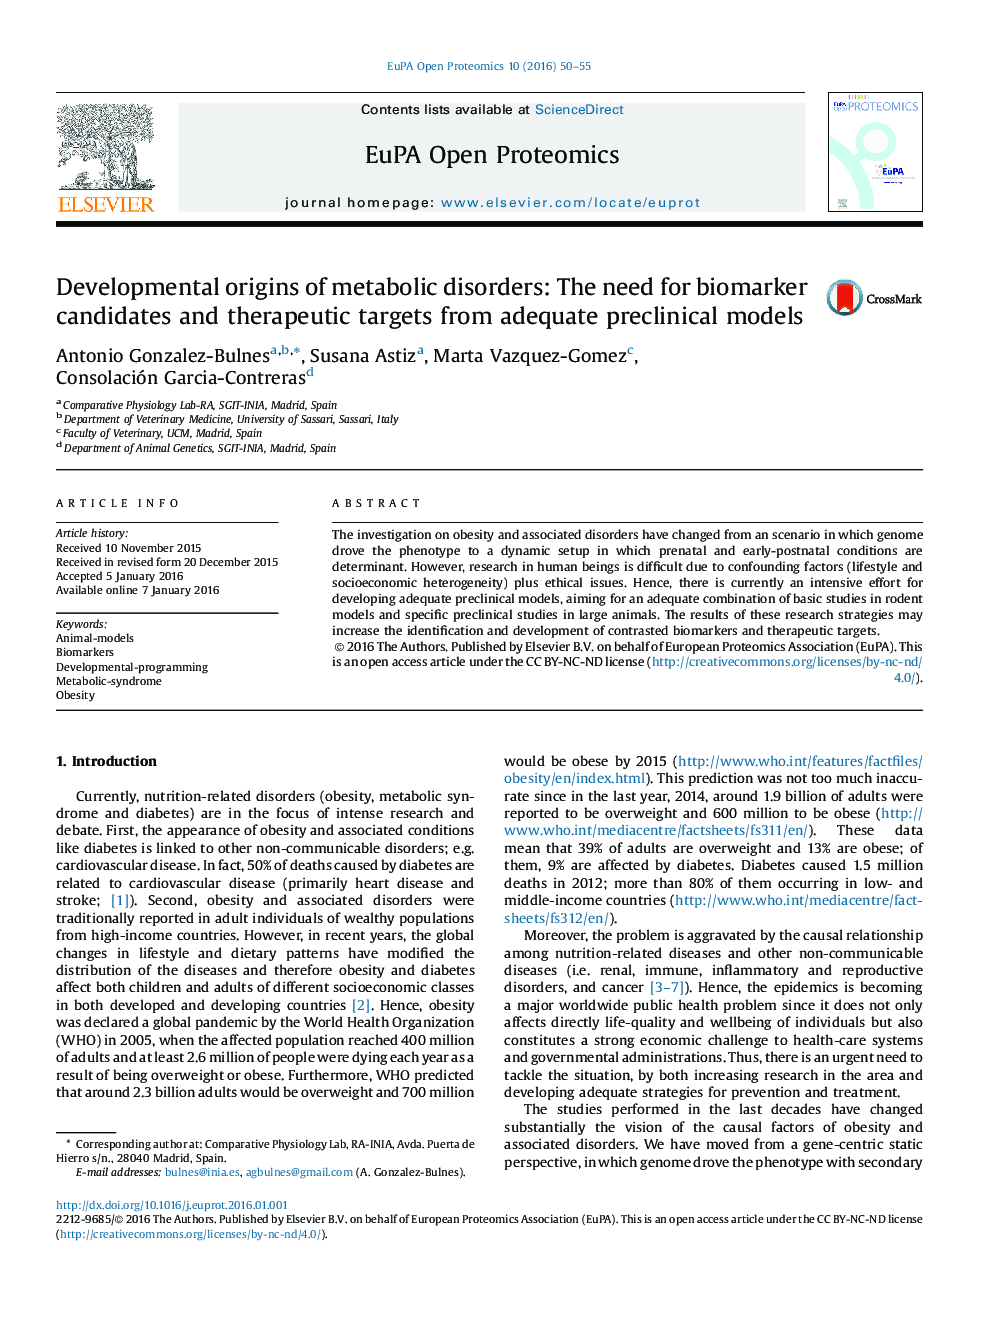 منشاء های رشدی اختلالات متابولیک: نیاز به نامزدهای بیومارکر و اهداف درمانی از مدل های پیش بالینی مناسب